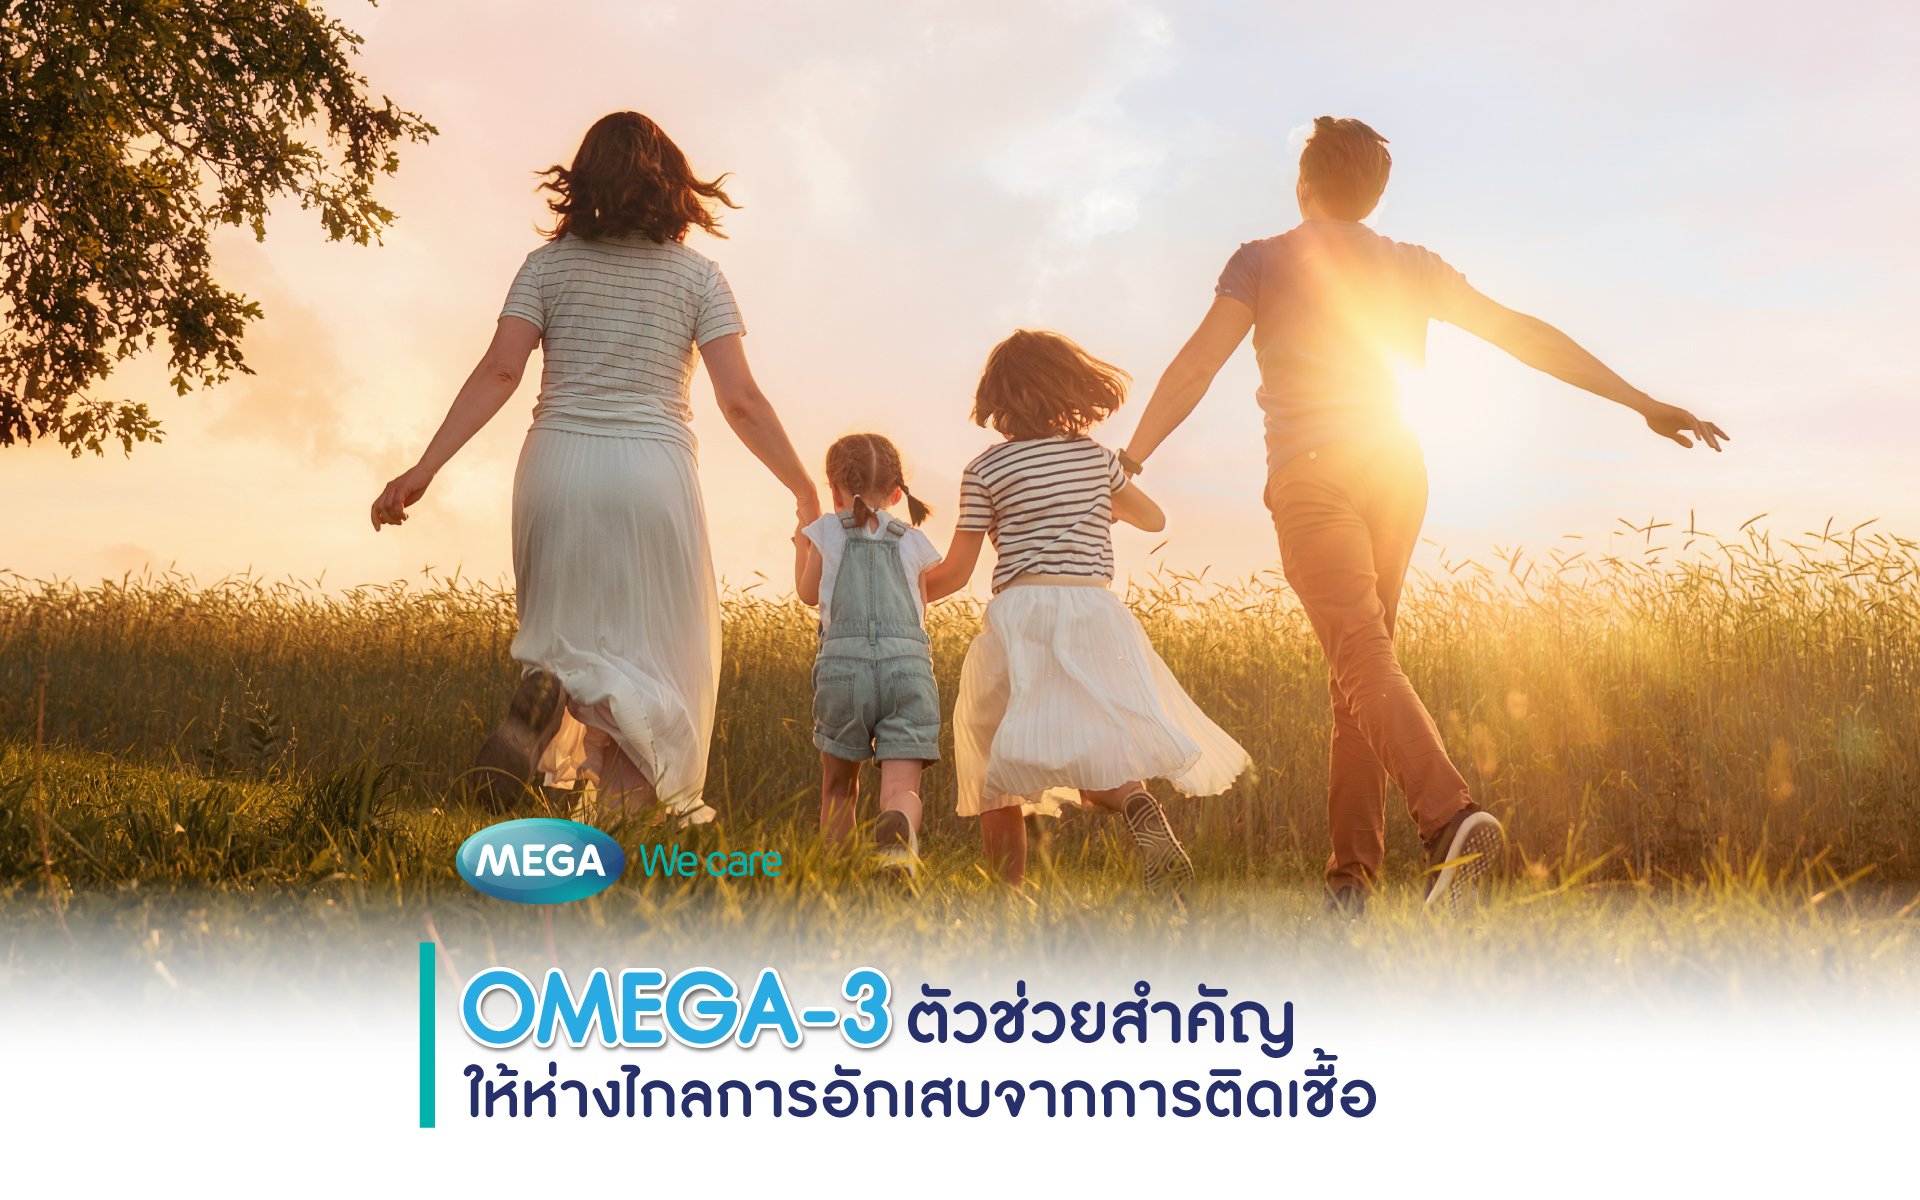 OMEGA-3 ตัวช่วยสำคัญให้ห่างไกลการอักเสบจากการติดเชื้อ